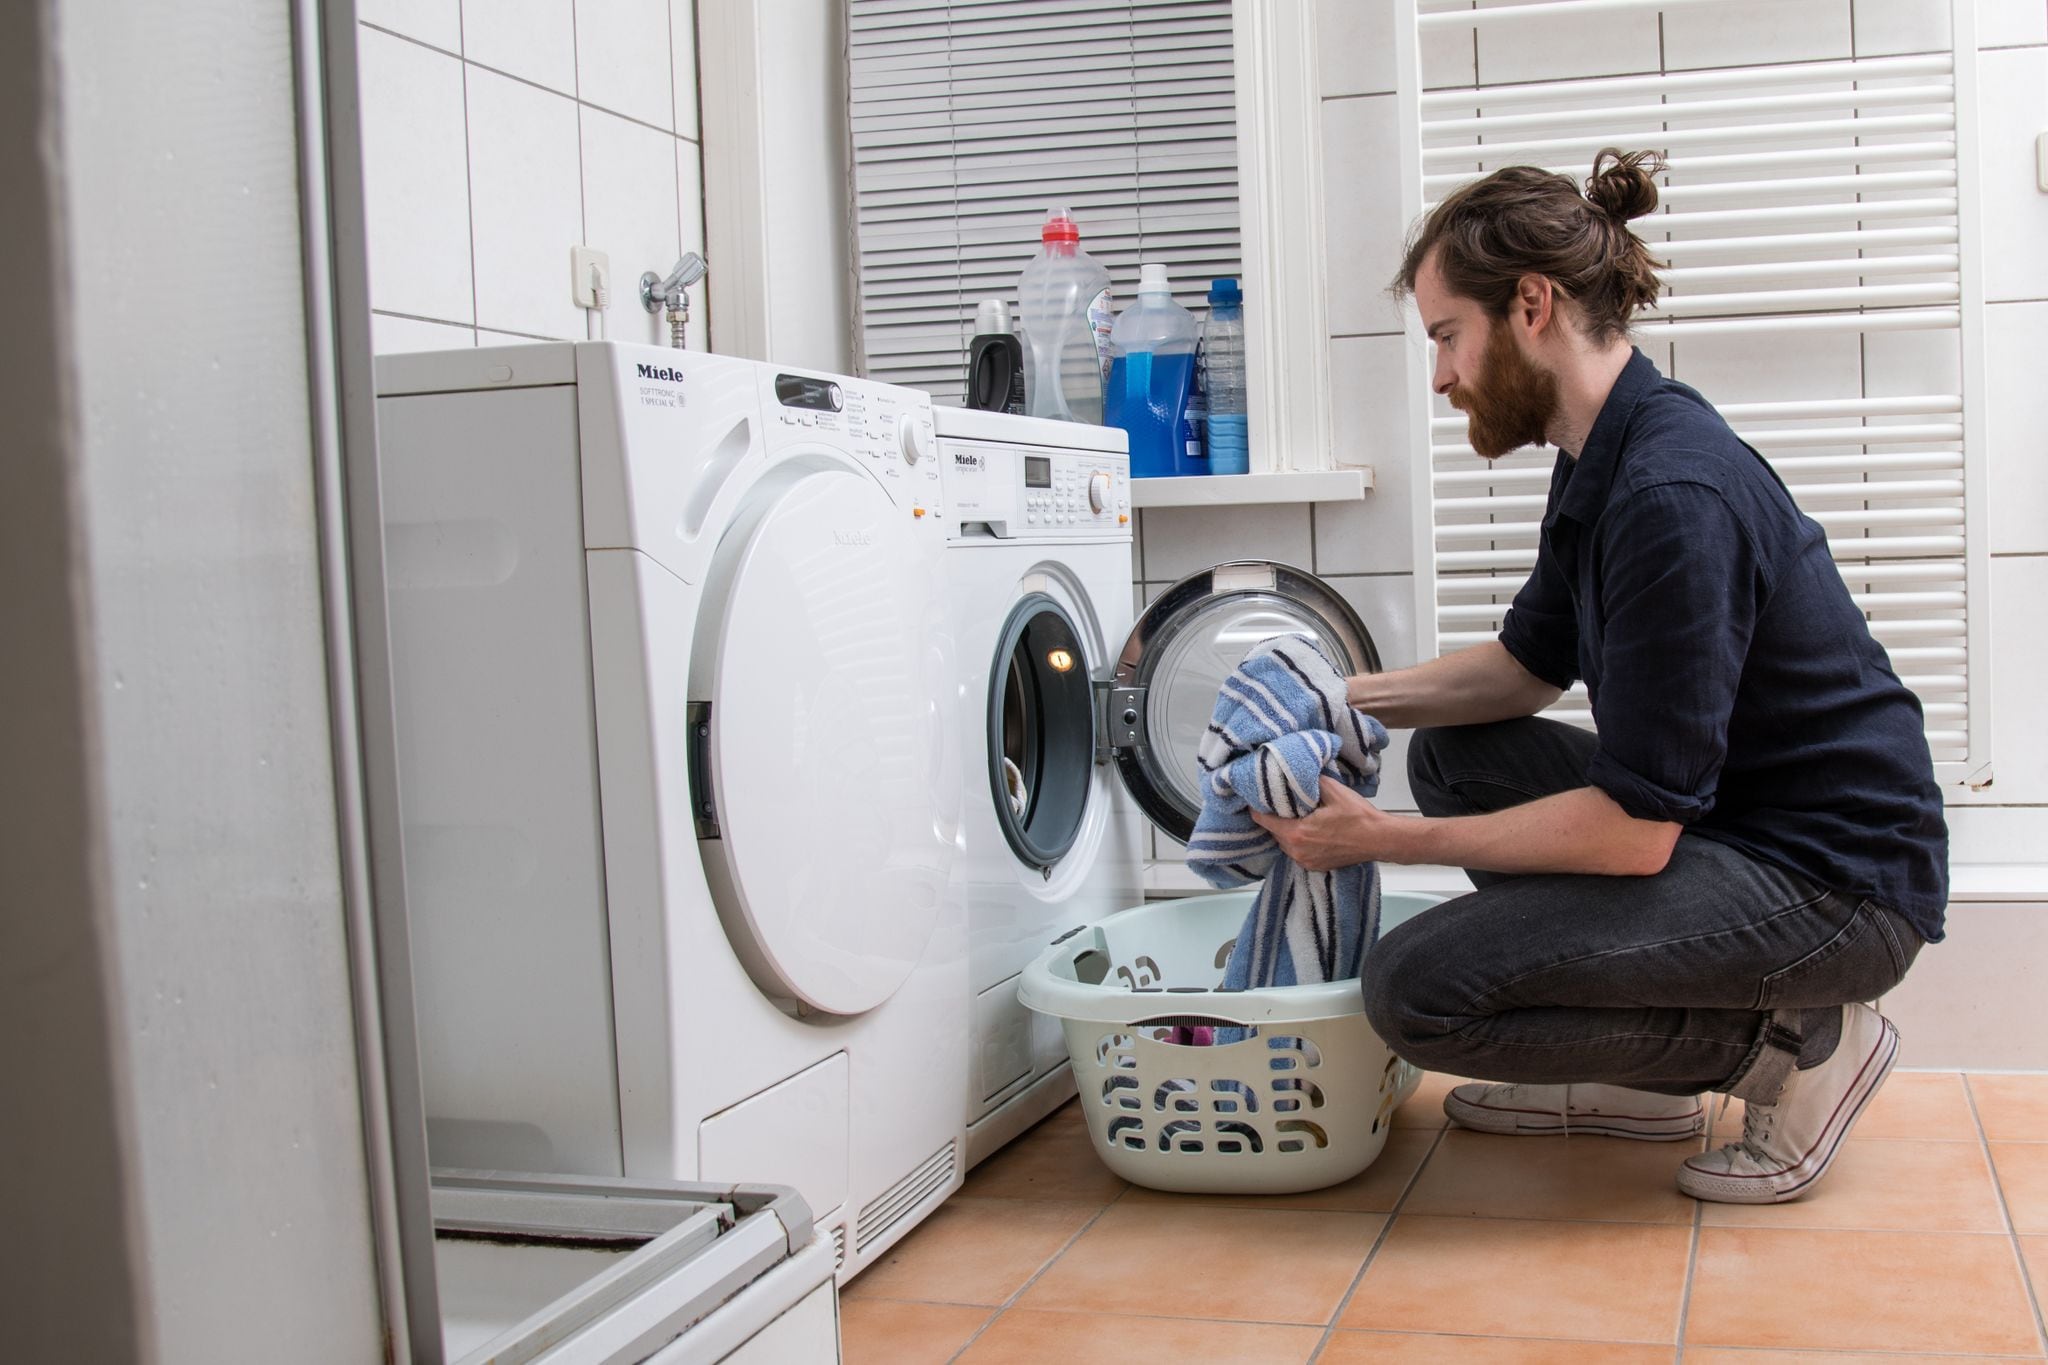 ILUSTRACIÓN - La lavadora gasta menos energía si se la prende en el programa ecológico. Foto: Christin Klose/dpa